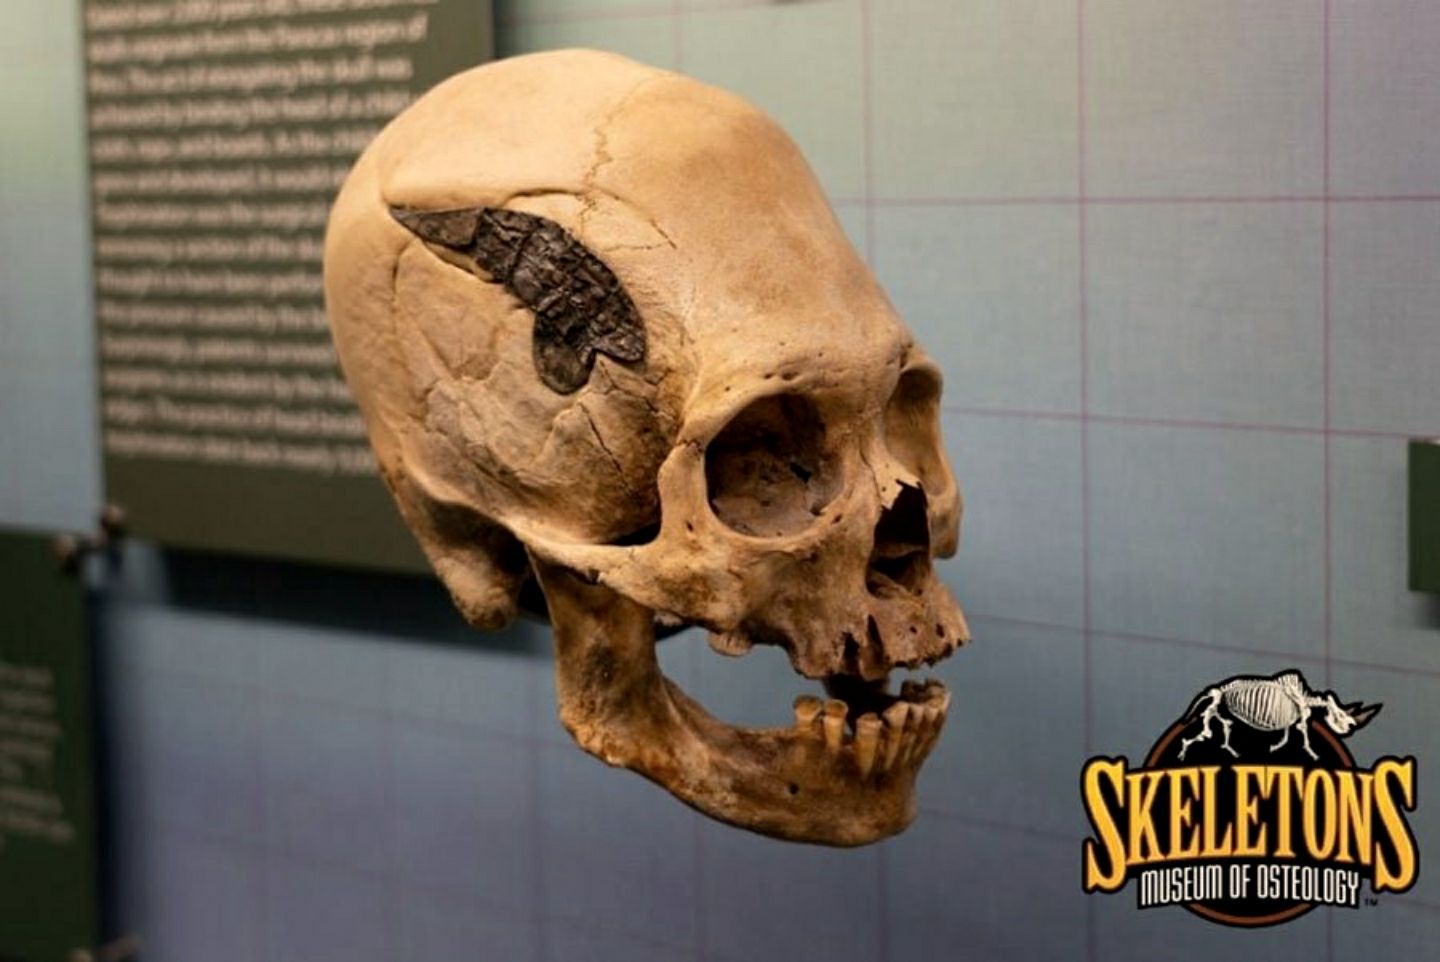 Táto lebka z Peru má kovový implantát. Ak je autentický, potom by to bol potenciálne unikátny nález zo starovekých Ánd.